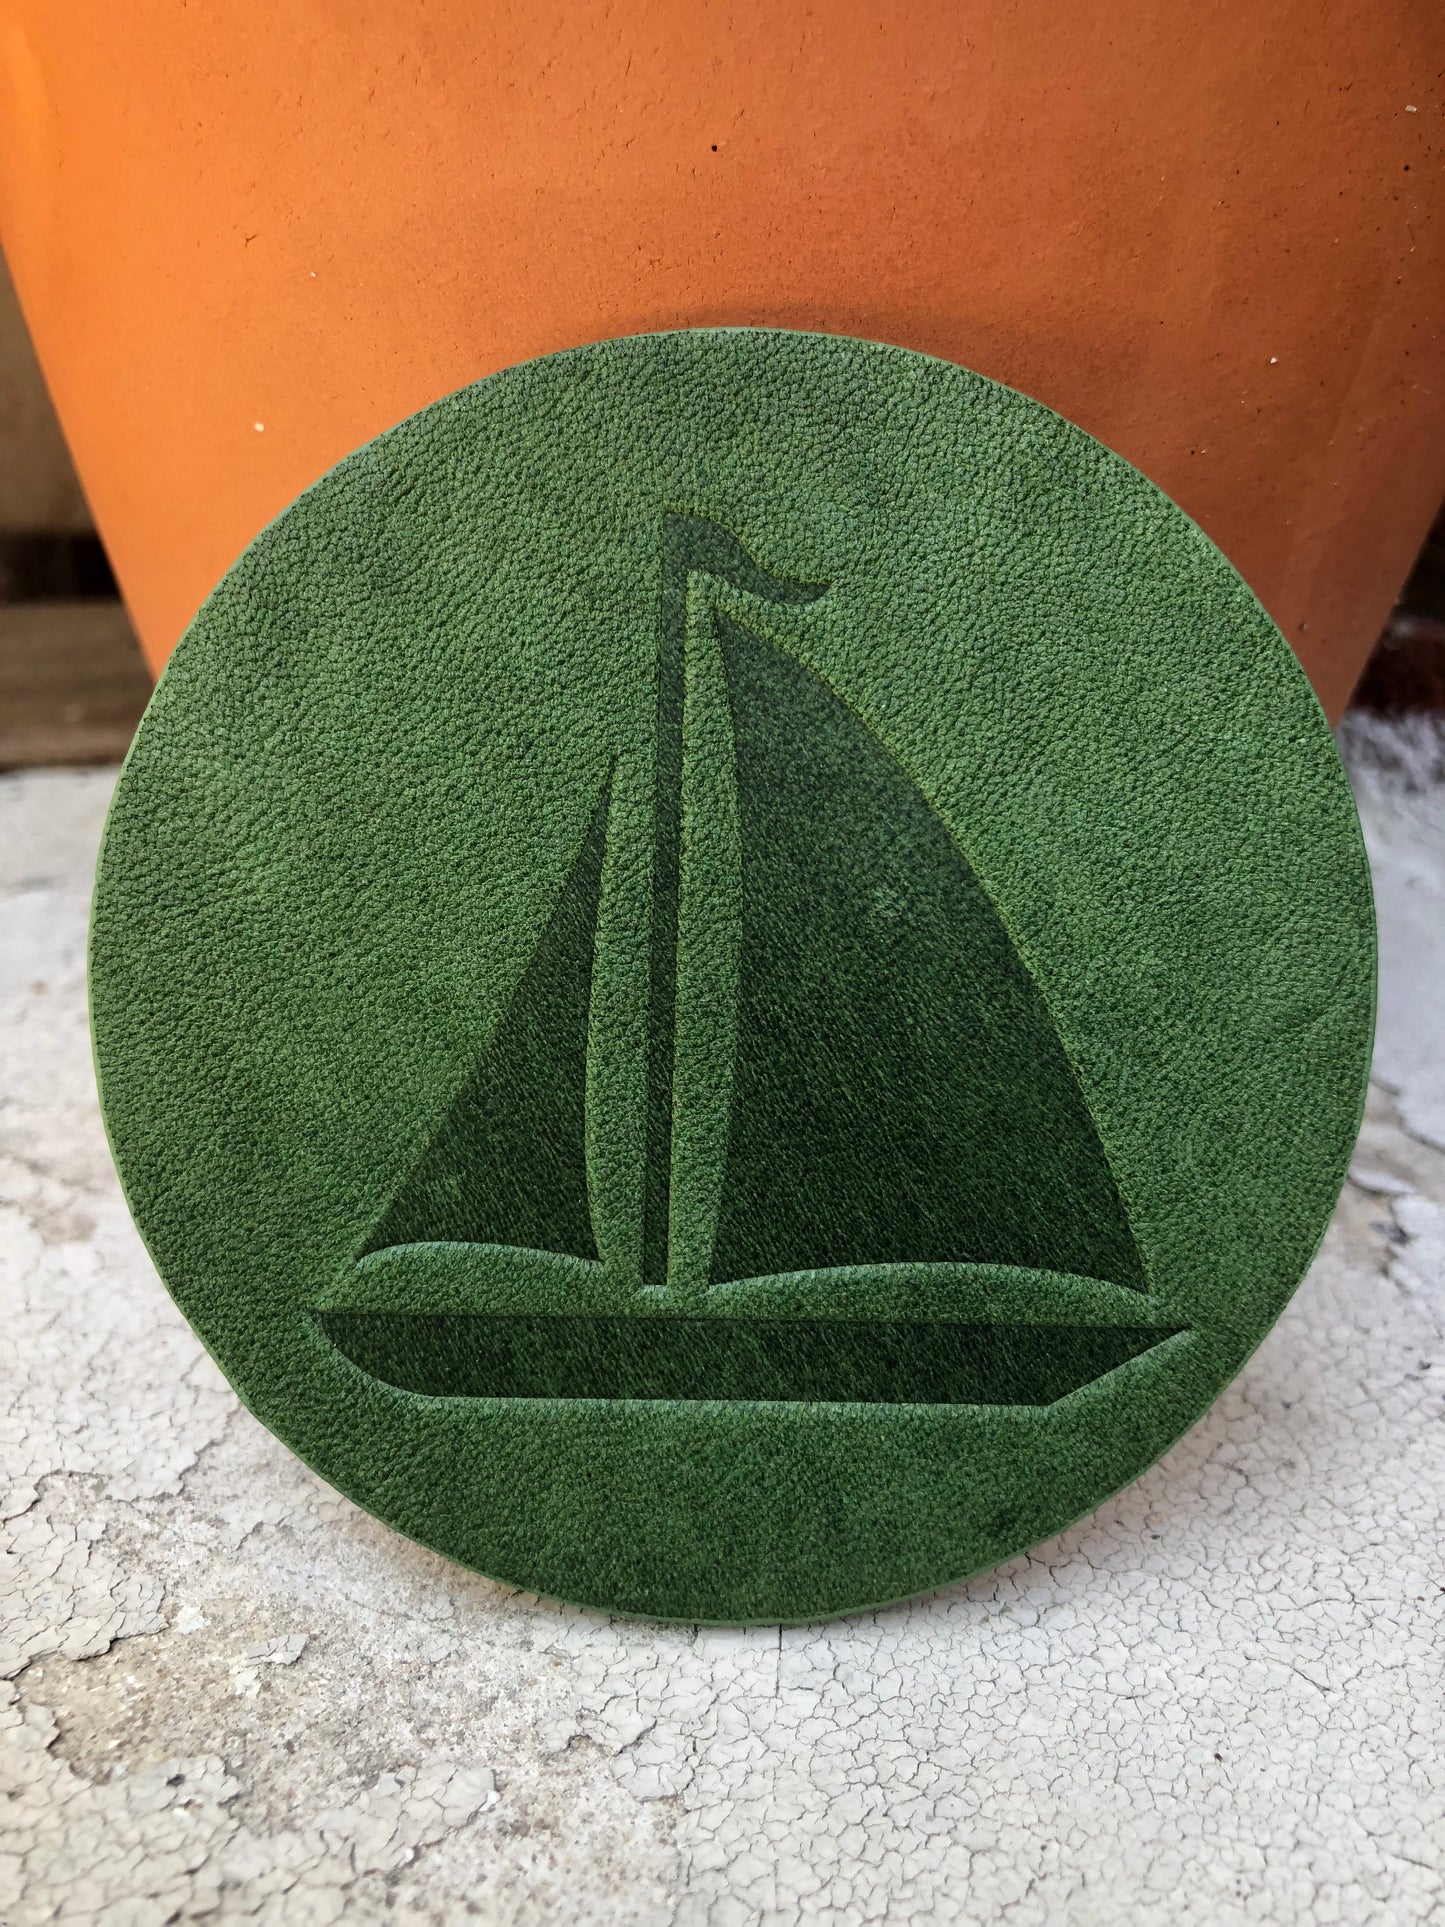 Leather Coaster - Sailboat